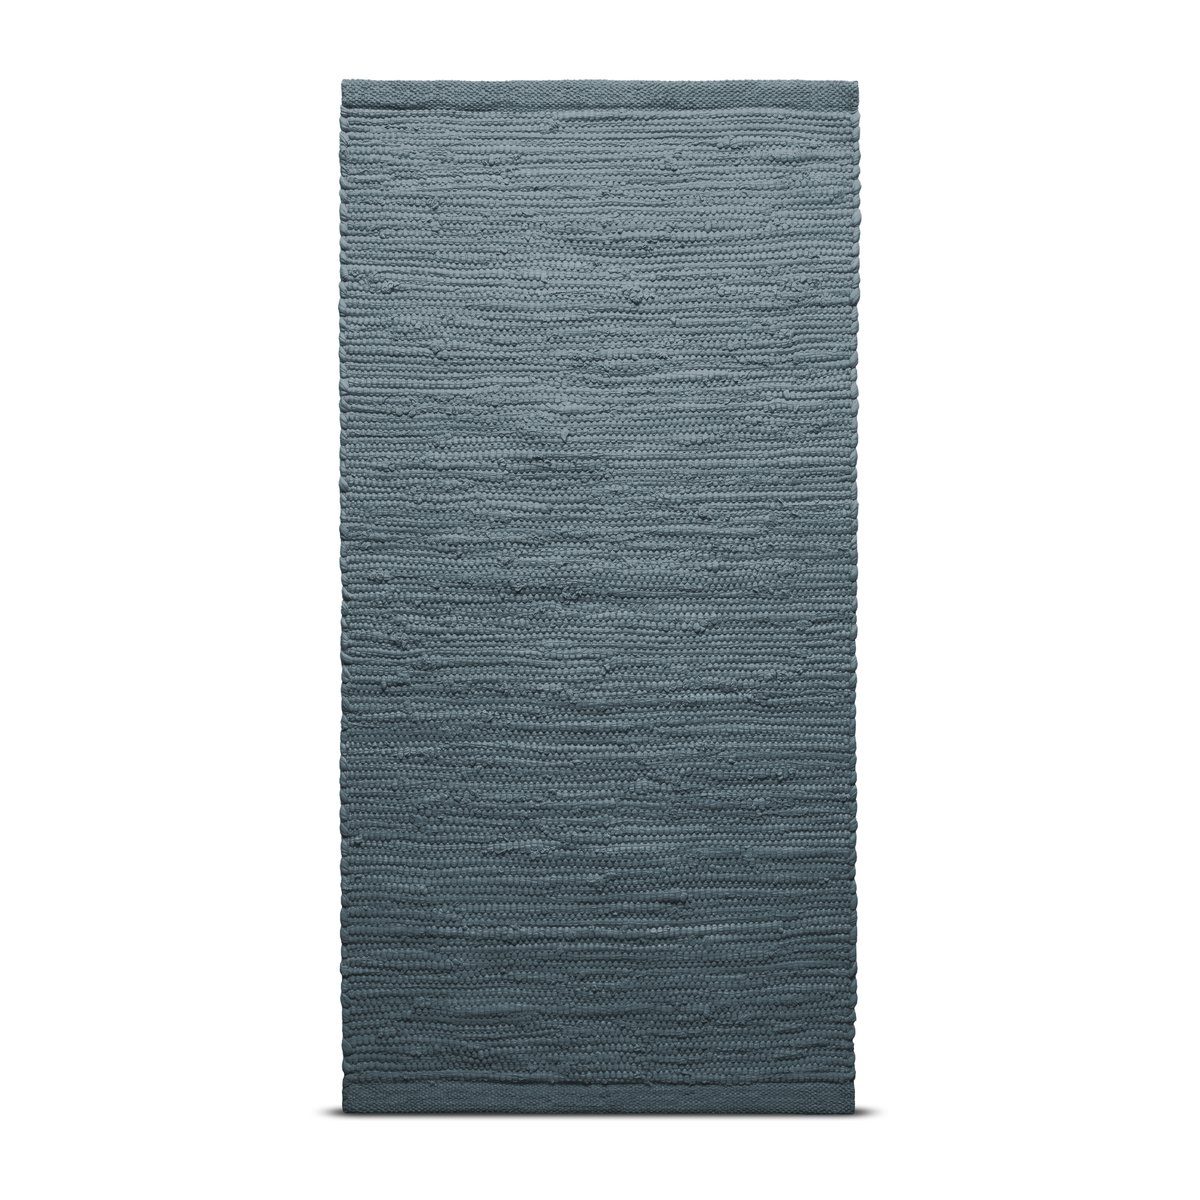 Rug Solid Cotton vloerkleed 140 x 200 cm. Steel grey (grijs)